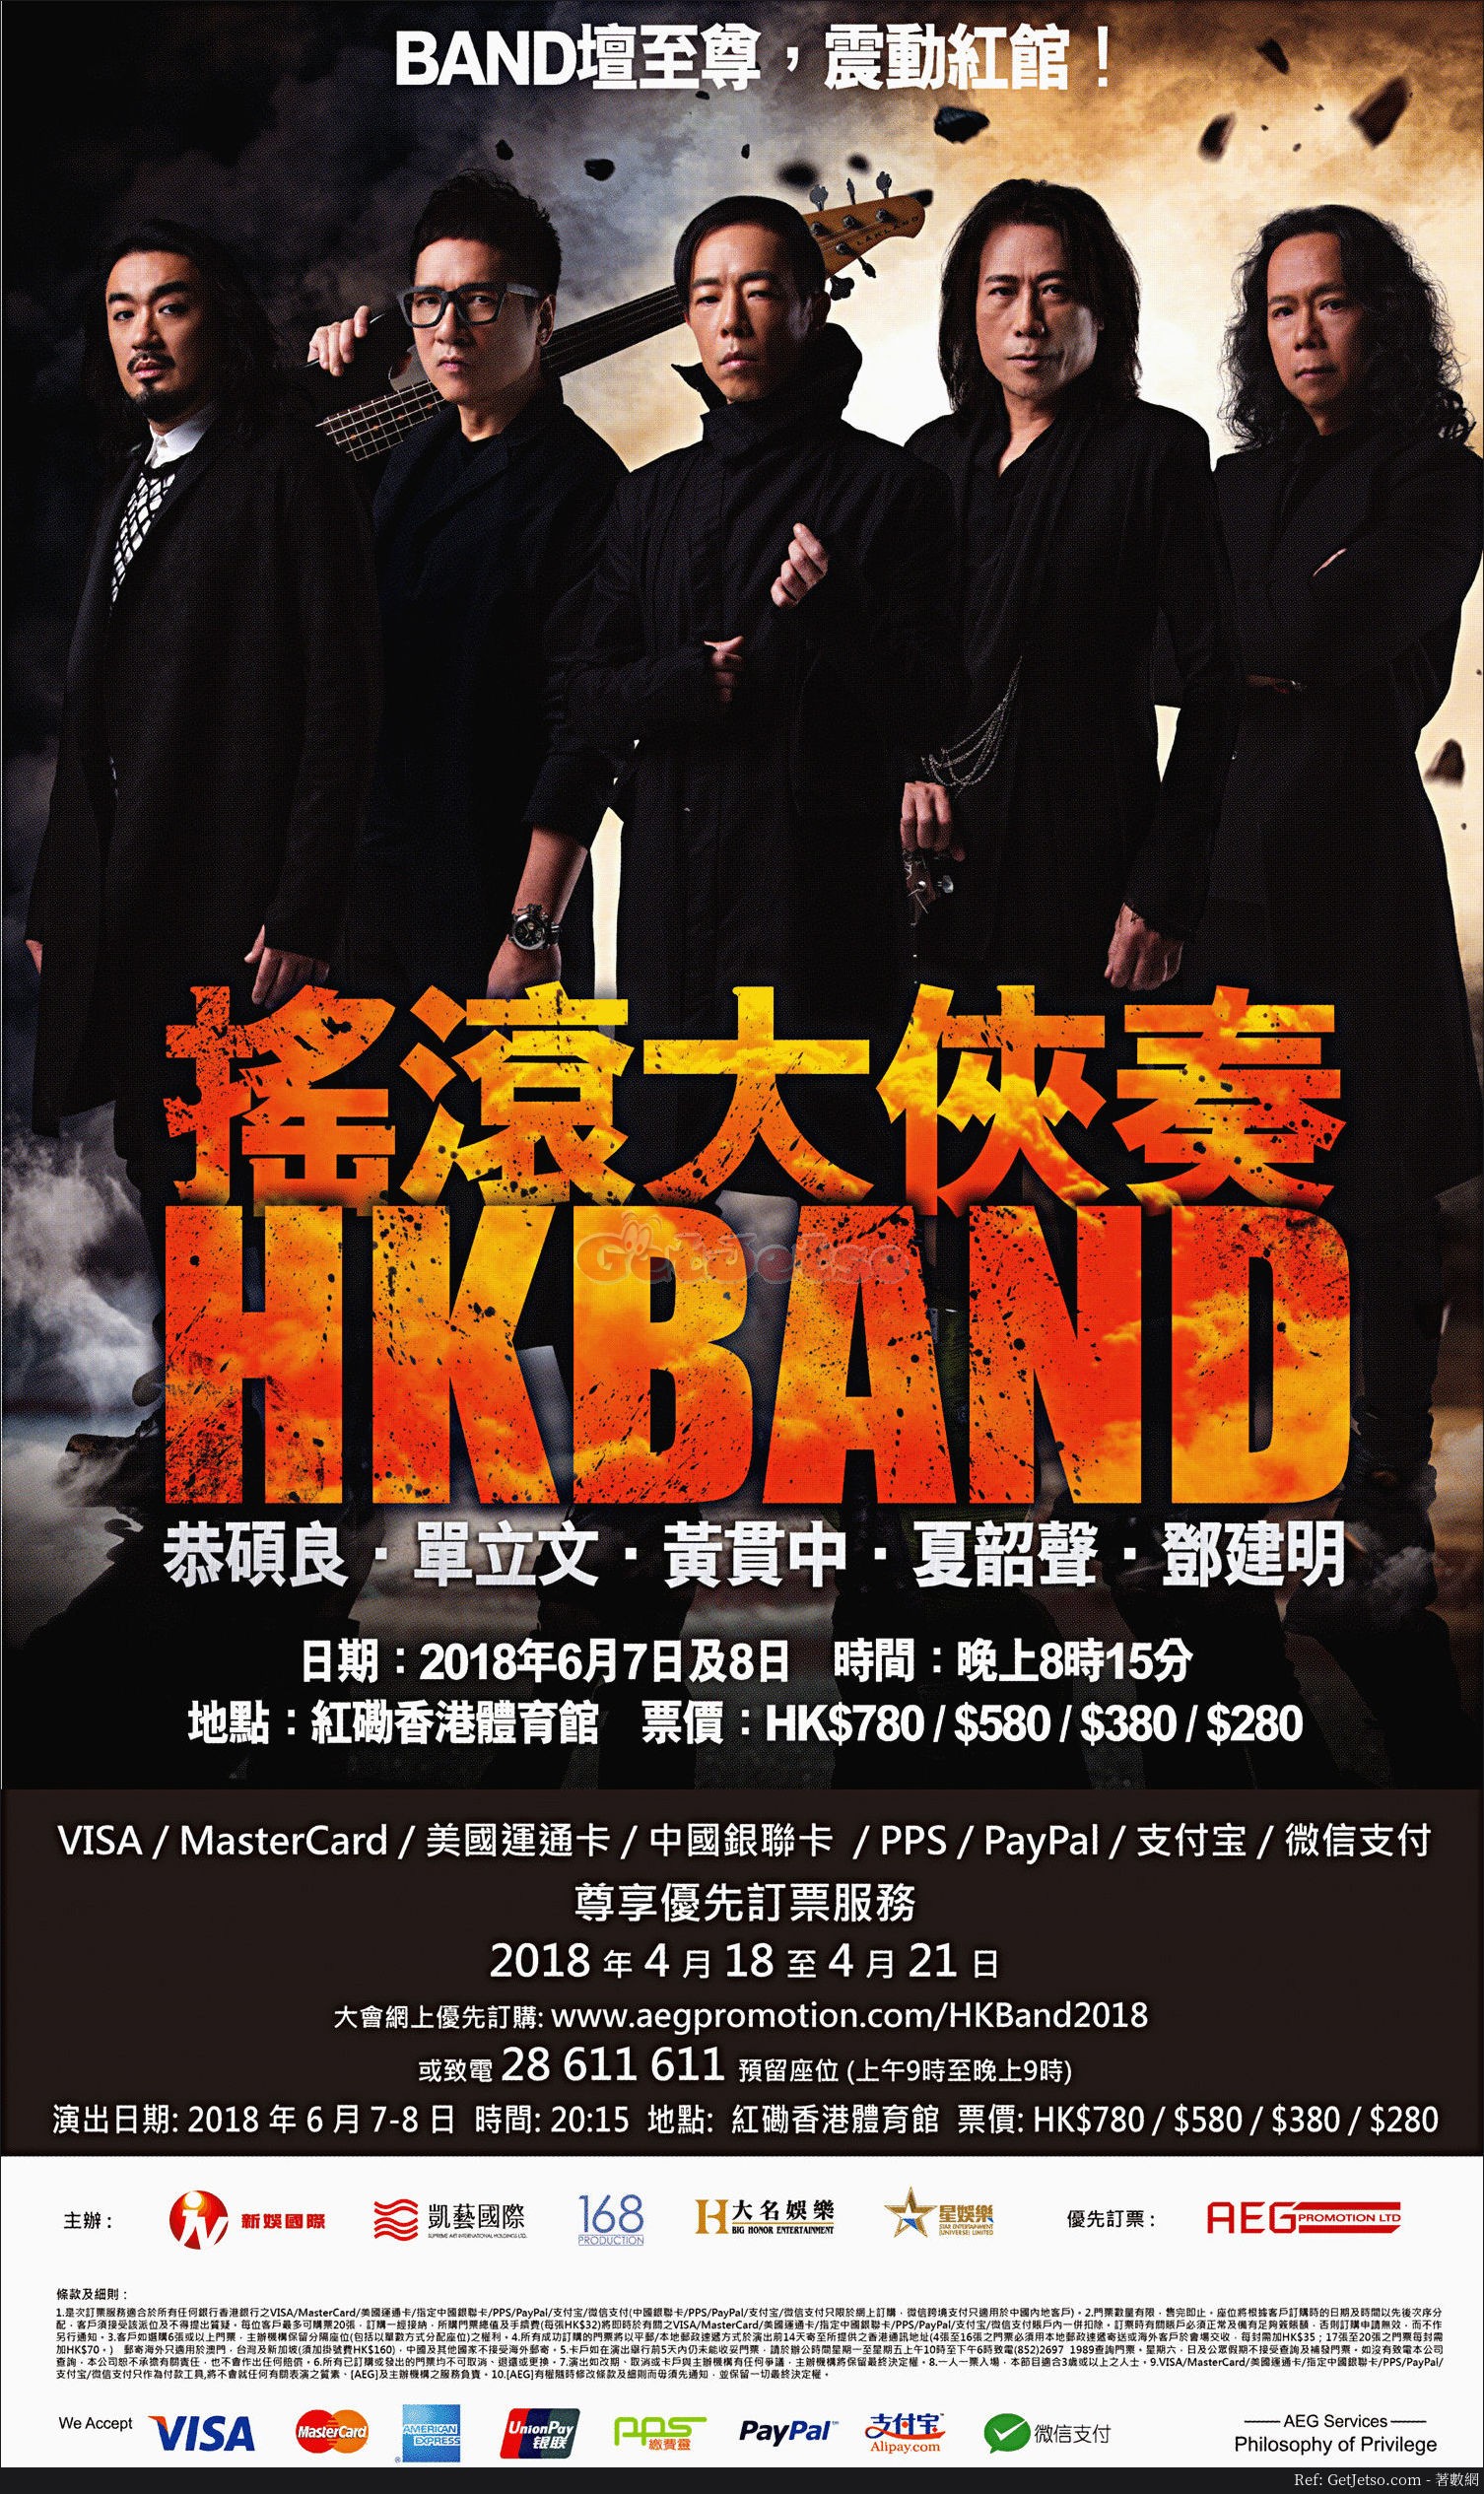 HONG KONG BAND搖滾大俠奏優先訂票優惠(18年4月18-21日)圖片1